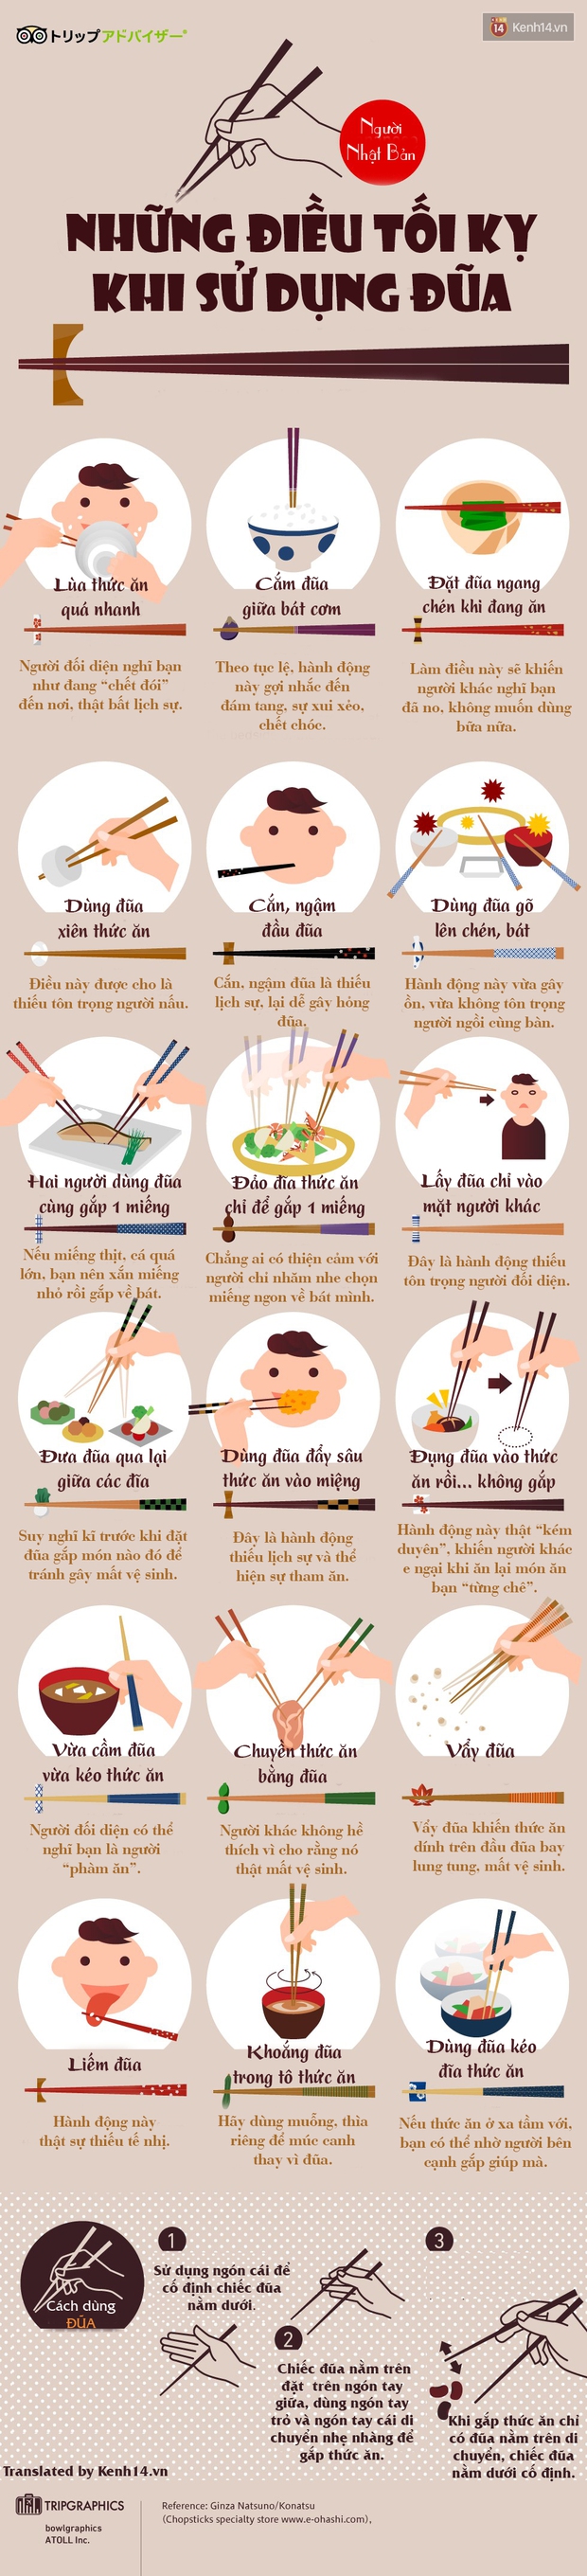 Sử dụng mỗi ngày nhưng bạn chưa chắc biết hết những quy tắc dùng đũa này của người Nhật - Ảnh 1.